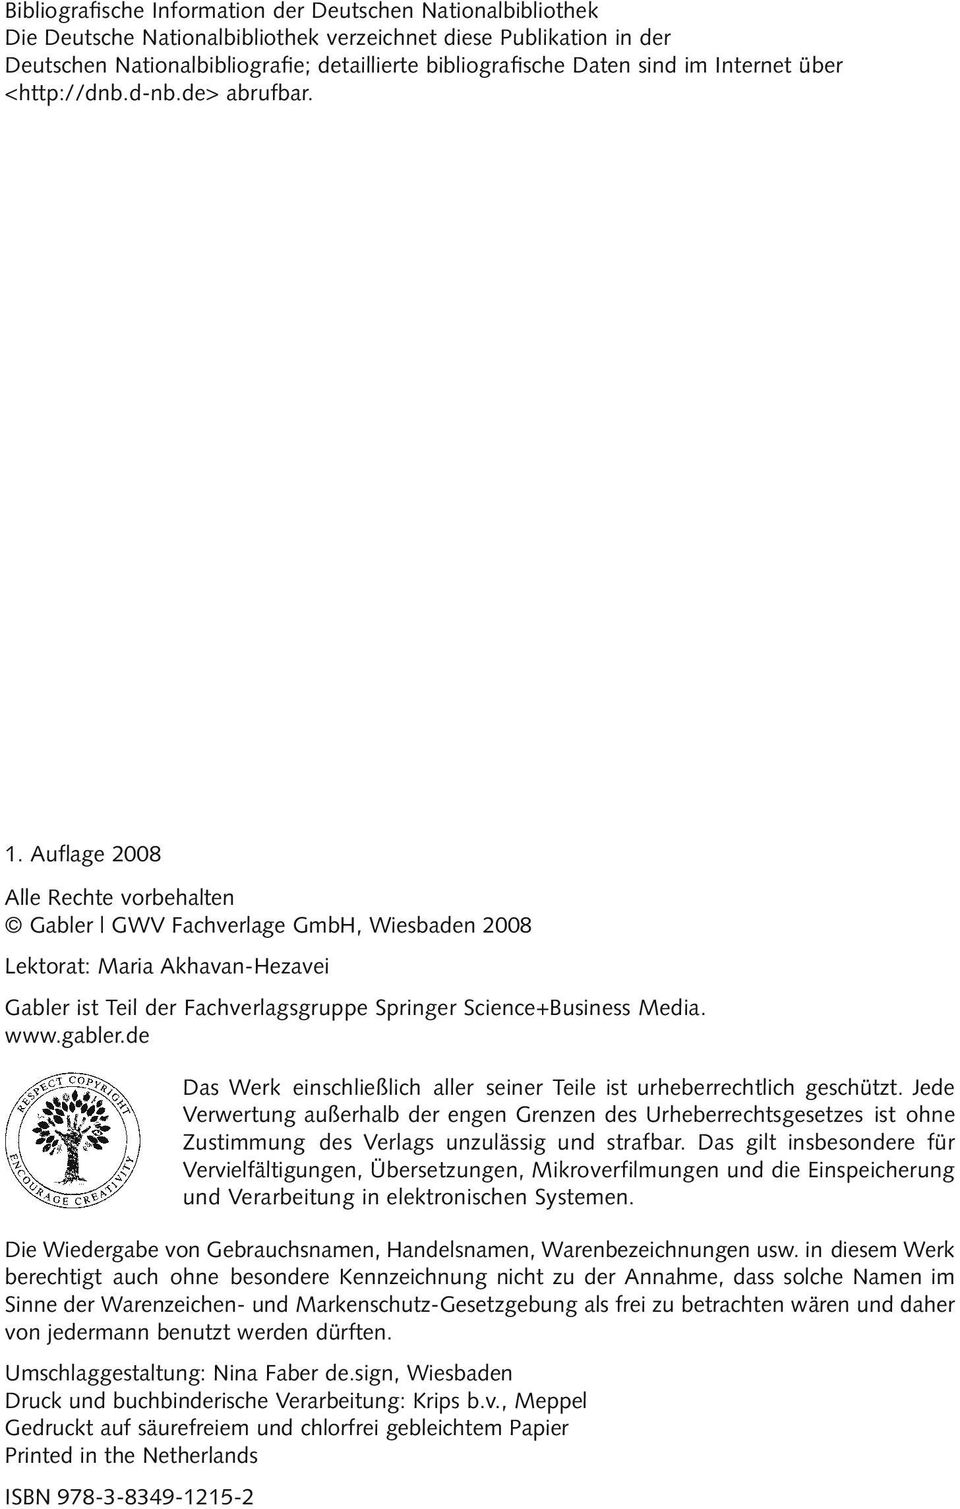 Auflage 2008 Alle Rechte vorbehalten Gabler GWV Fachverlage GmbH, Wiesbaden 2008 Lektorat: Maria Akhavan-Hezavei Gabler ist Teil der Fachverlagsgruppe Springer Science+Business Media. www.gabler.